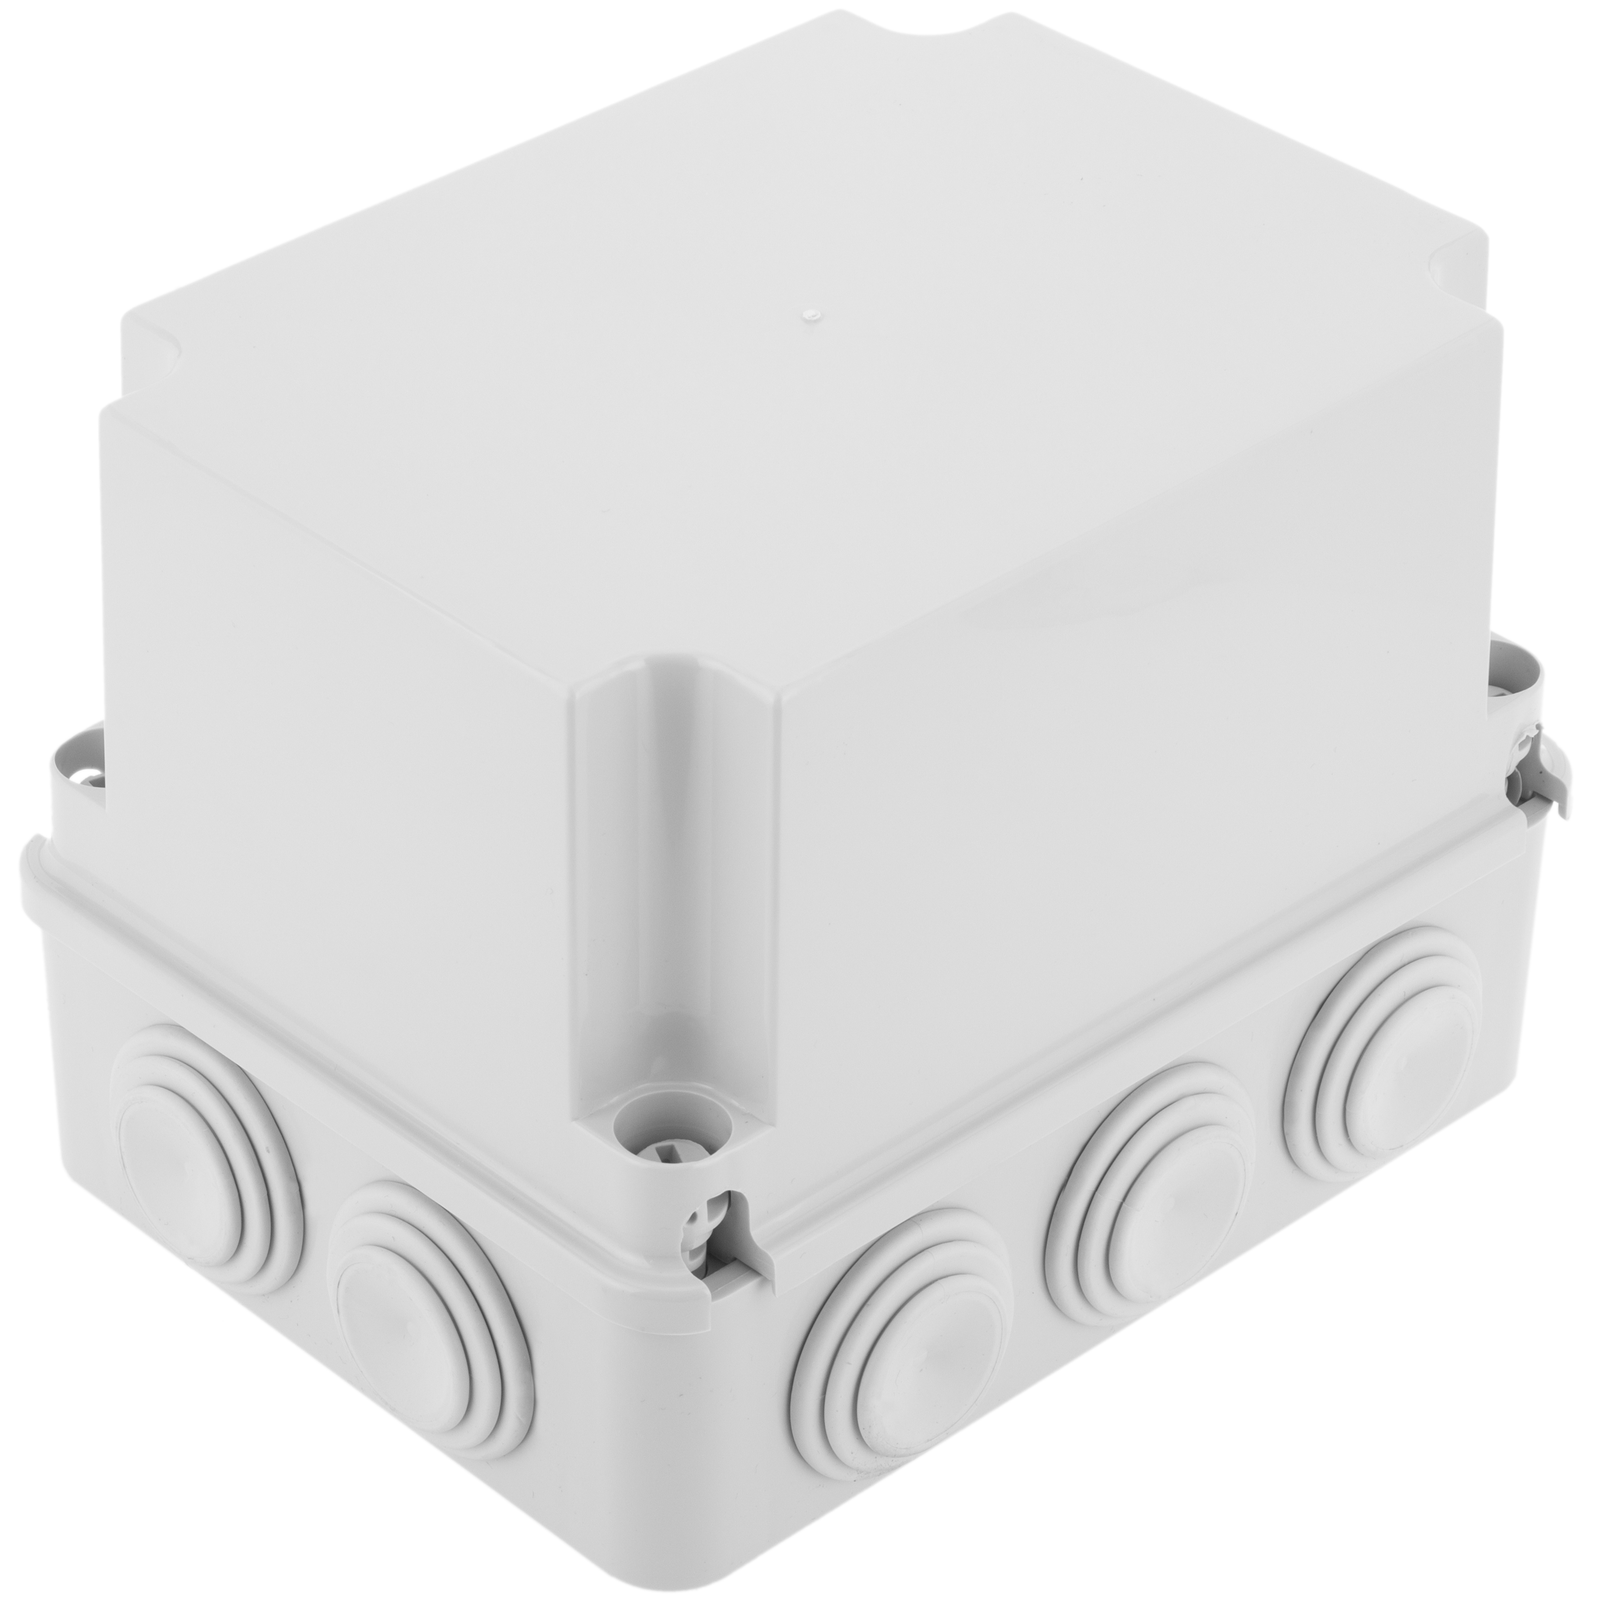 Caja estanca de superficie rectangular IP55 200 x 155 x 80 mm - Cablematic